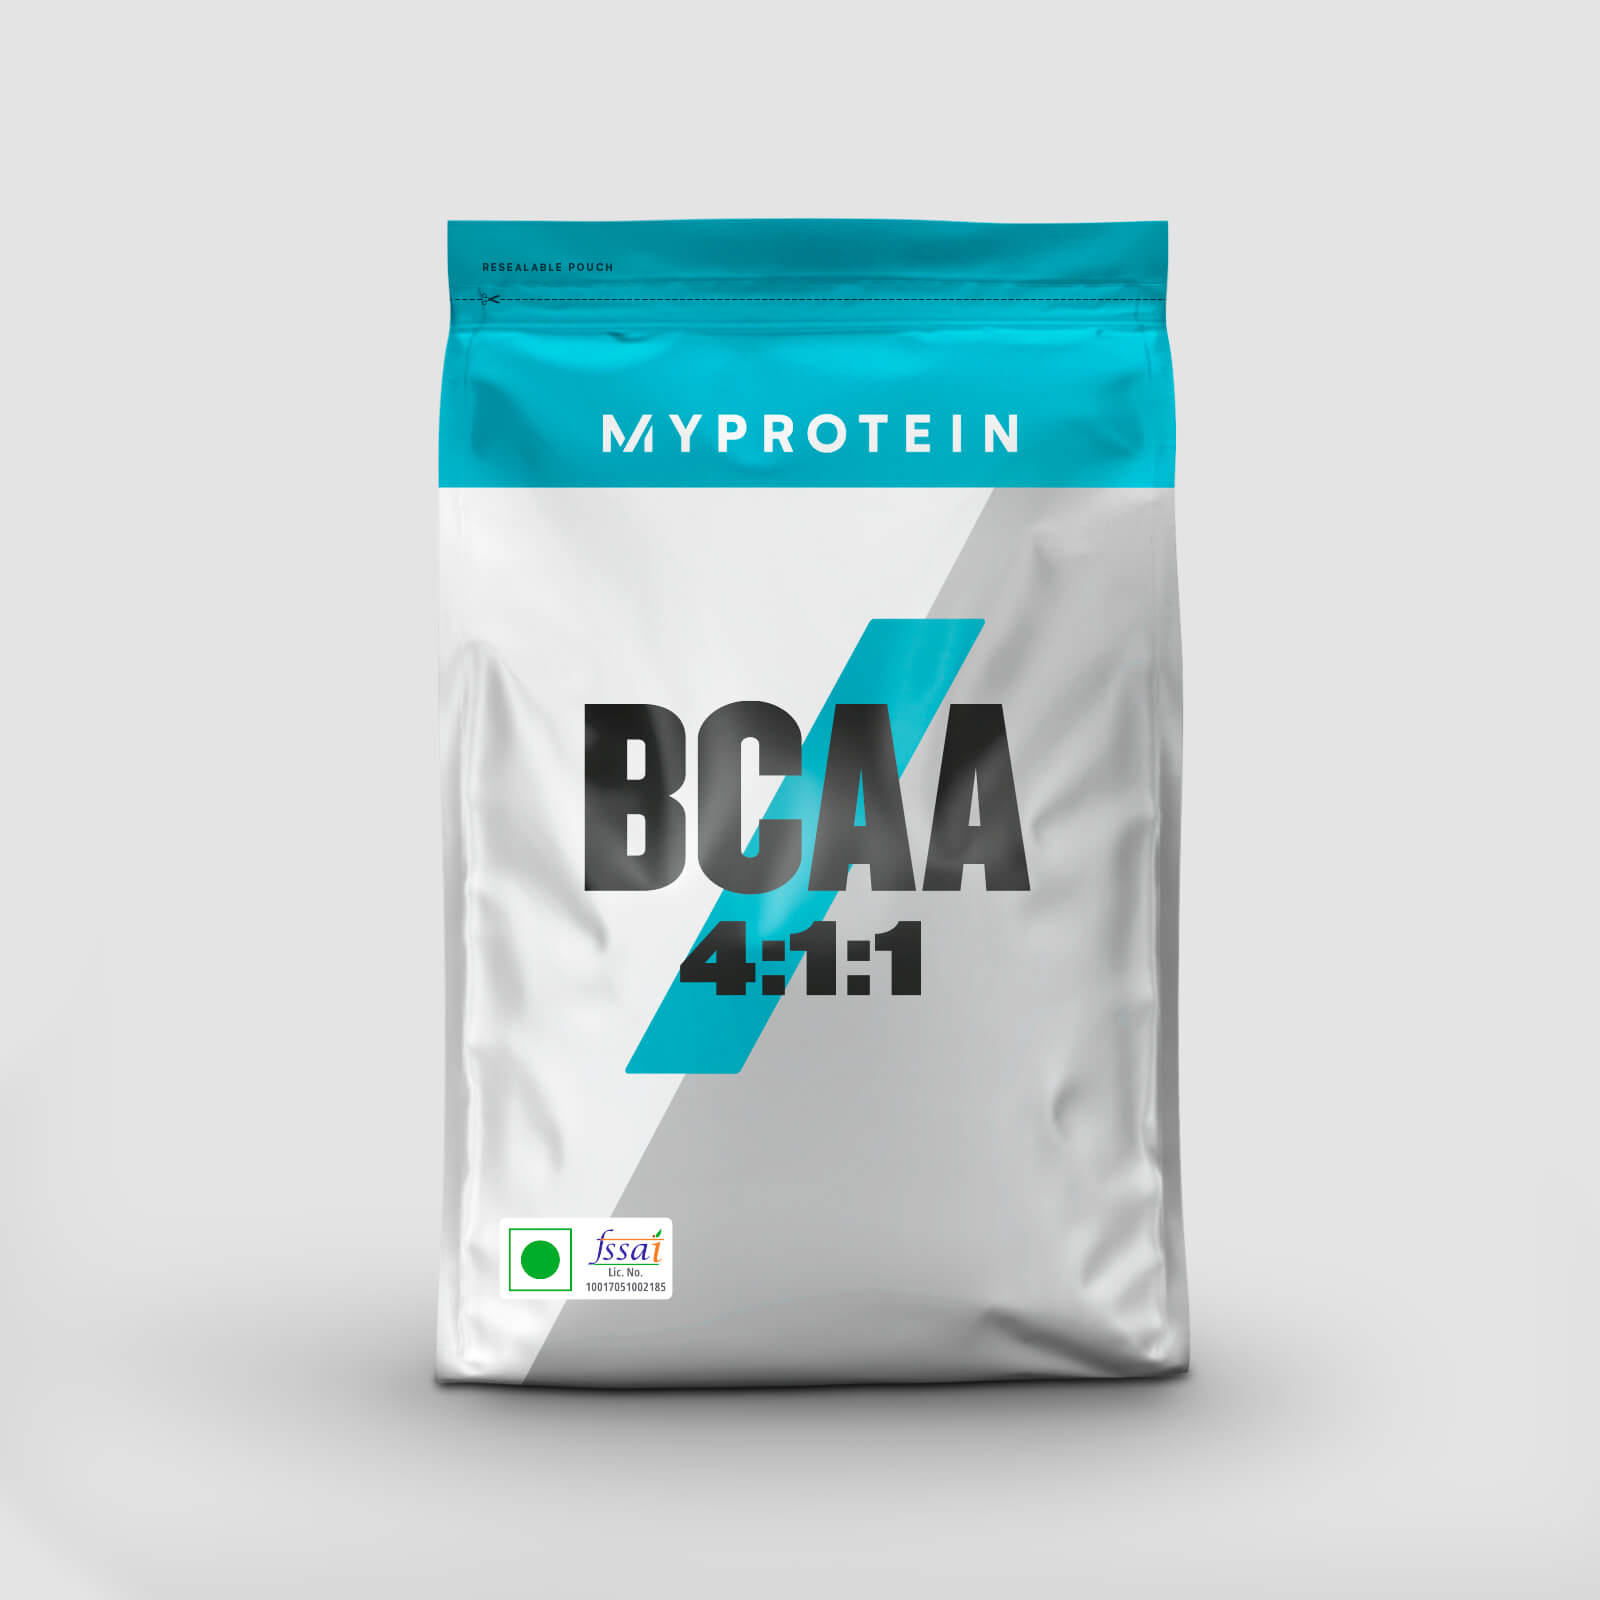 MyProtein BCAA 4:1:1 Powder Strawberry Lime